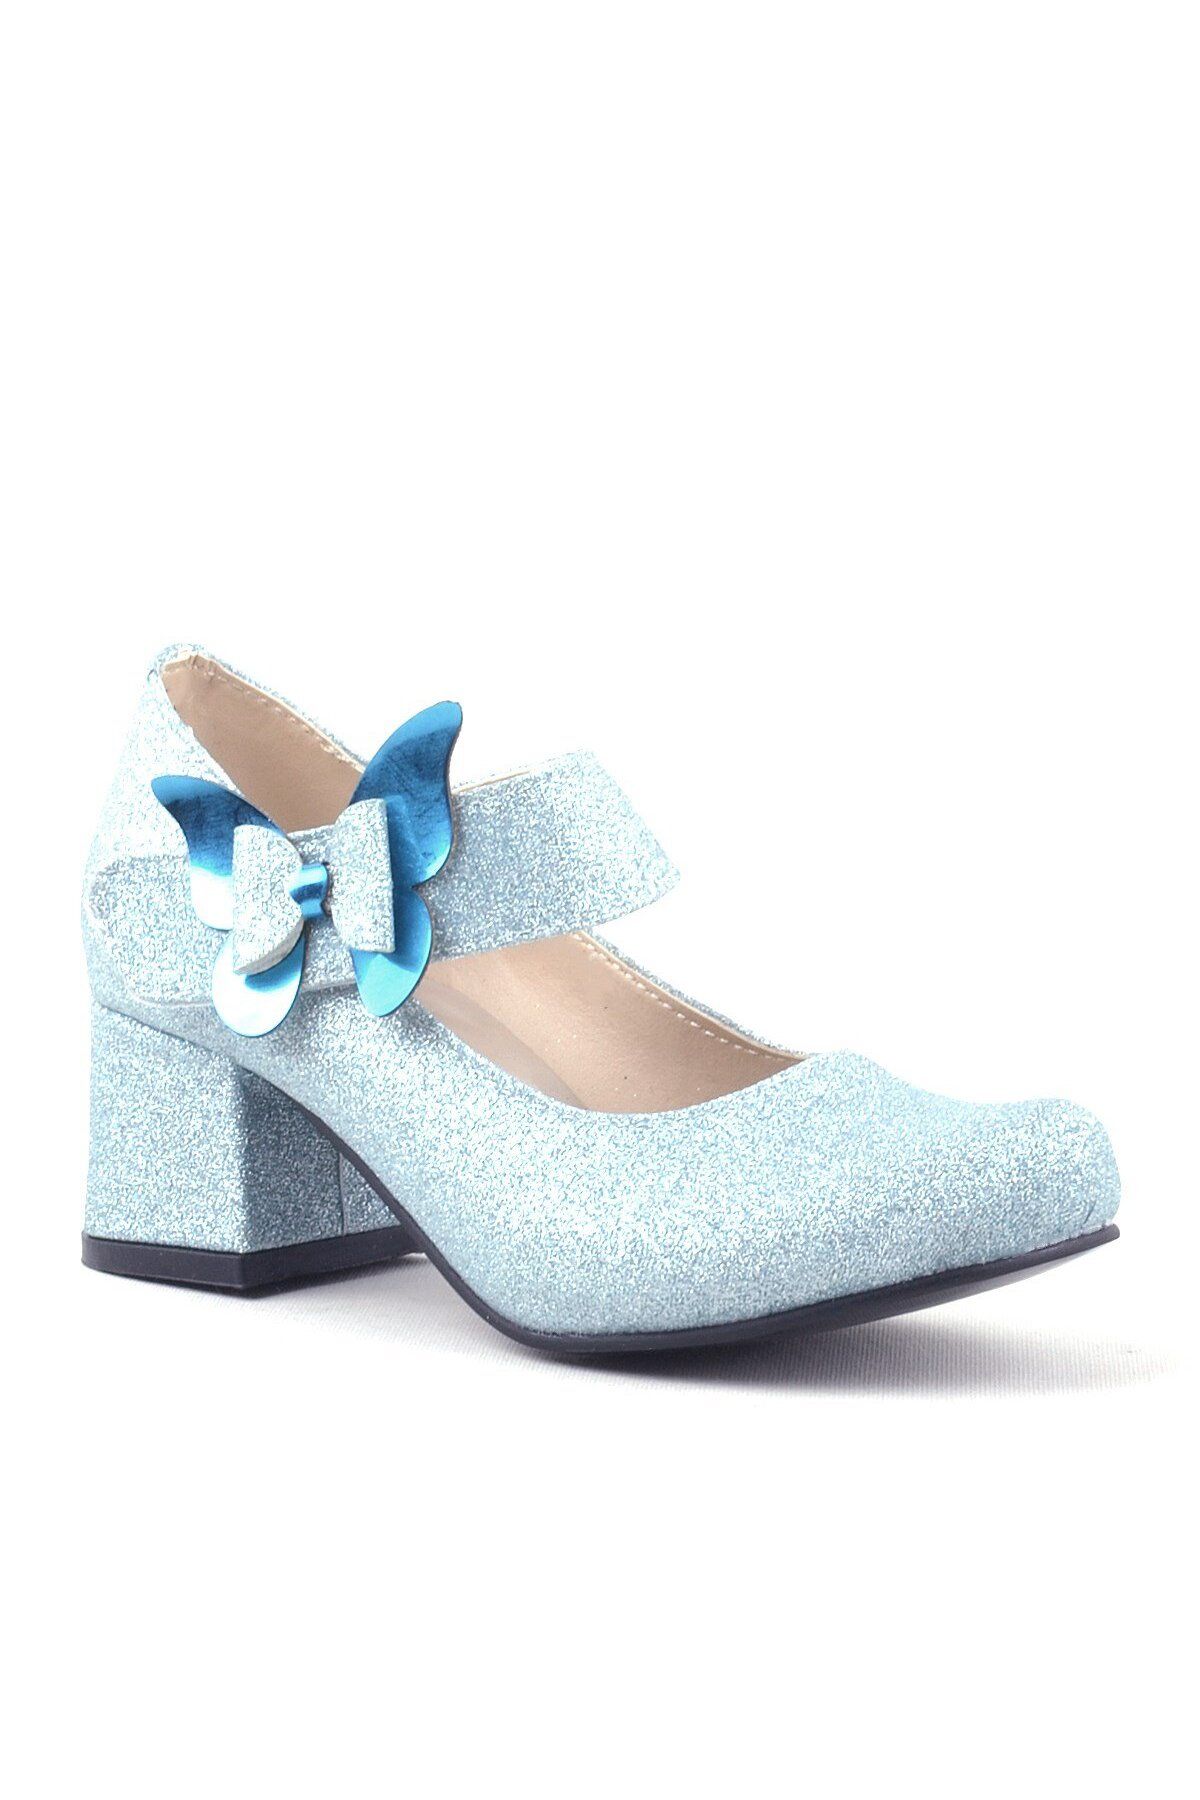 hapshoe Winx Mavi Işıltılı Kelebekli Kız Çocuk Topuklu Ayakkabı